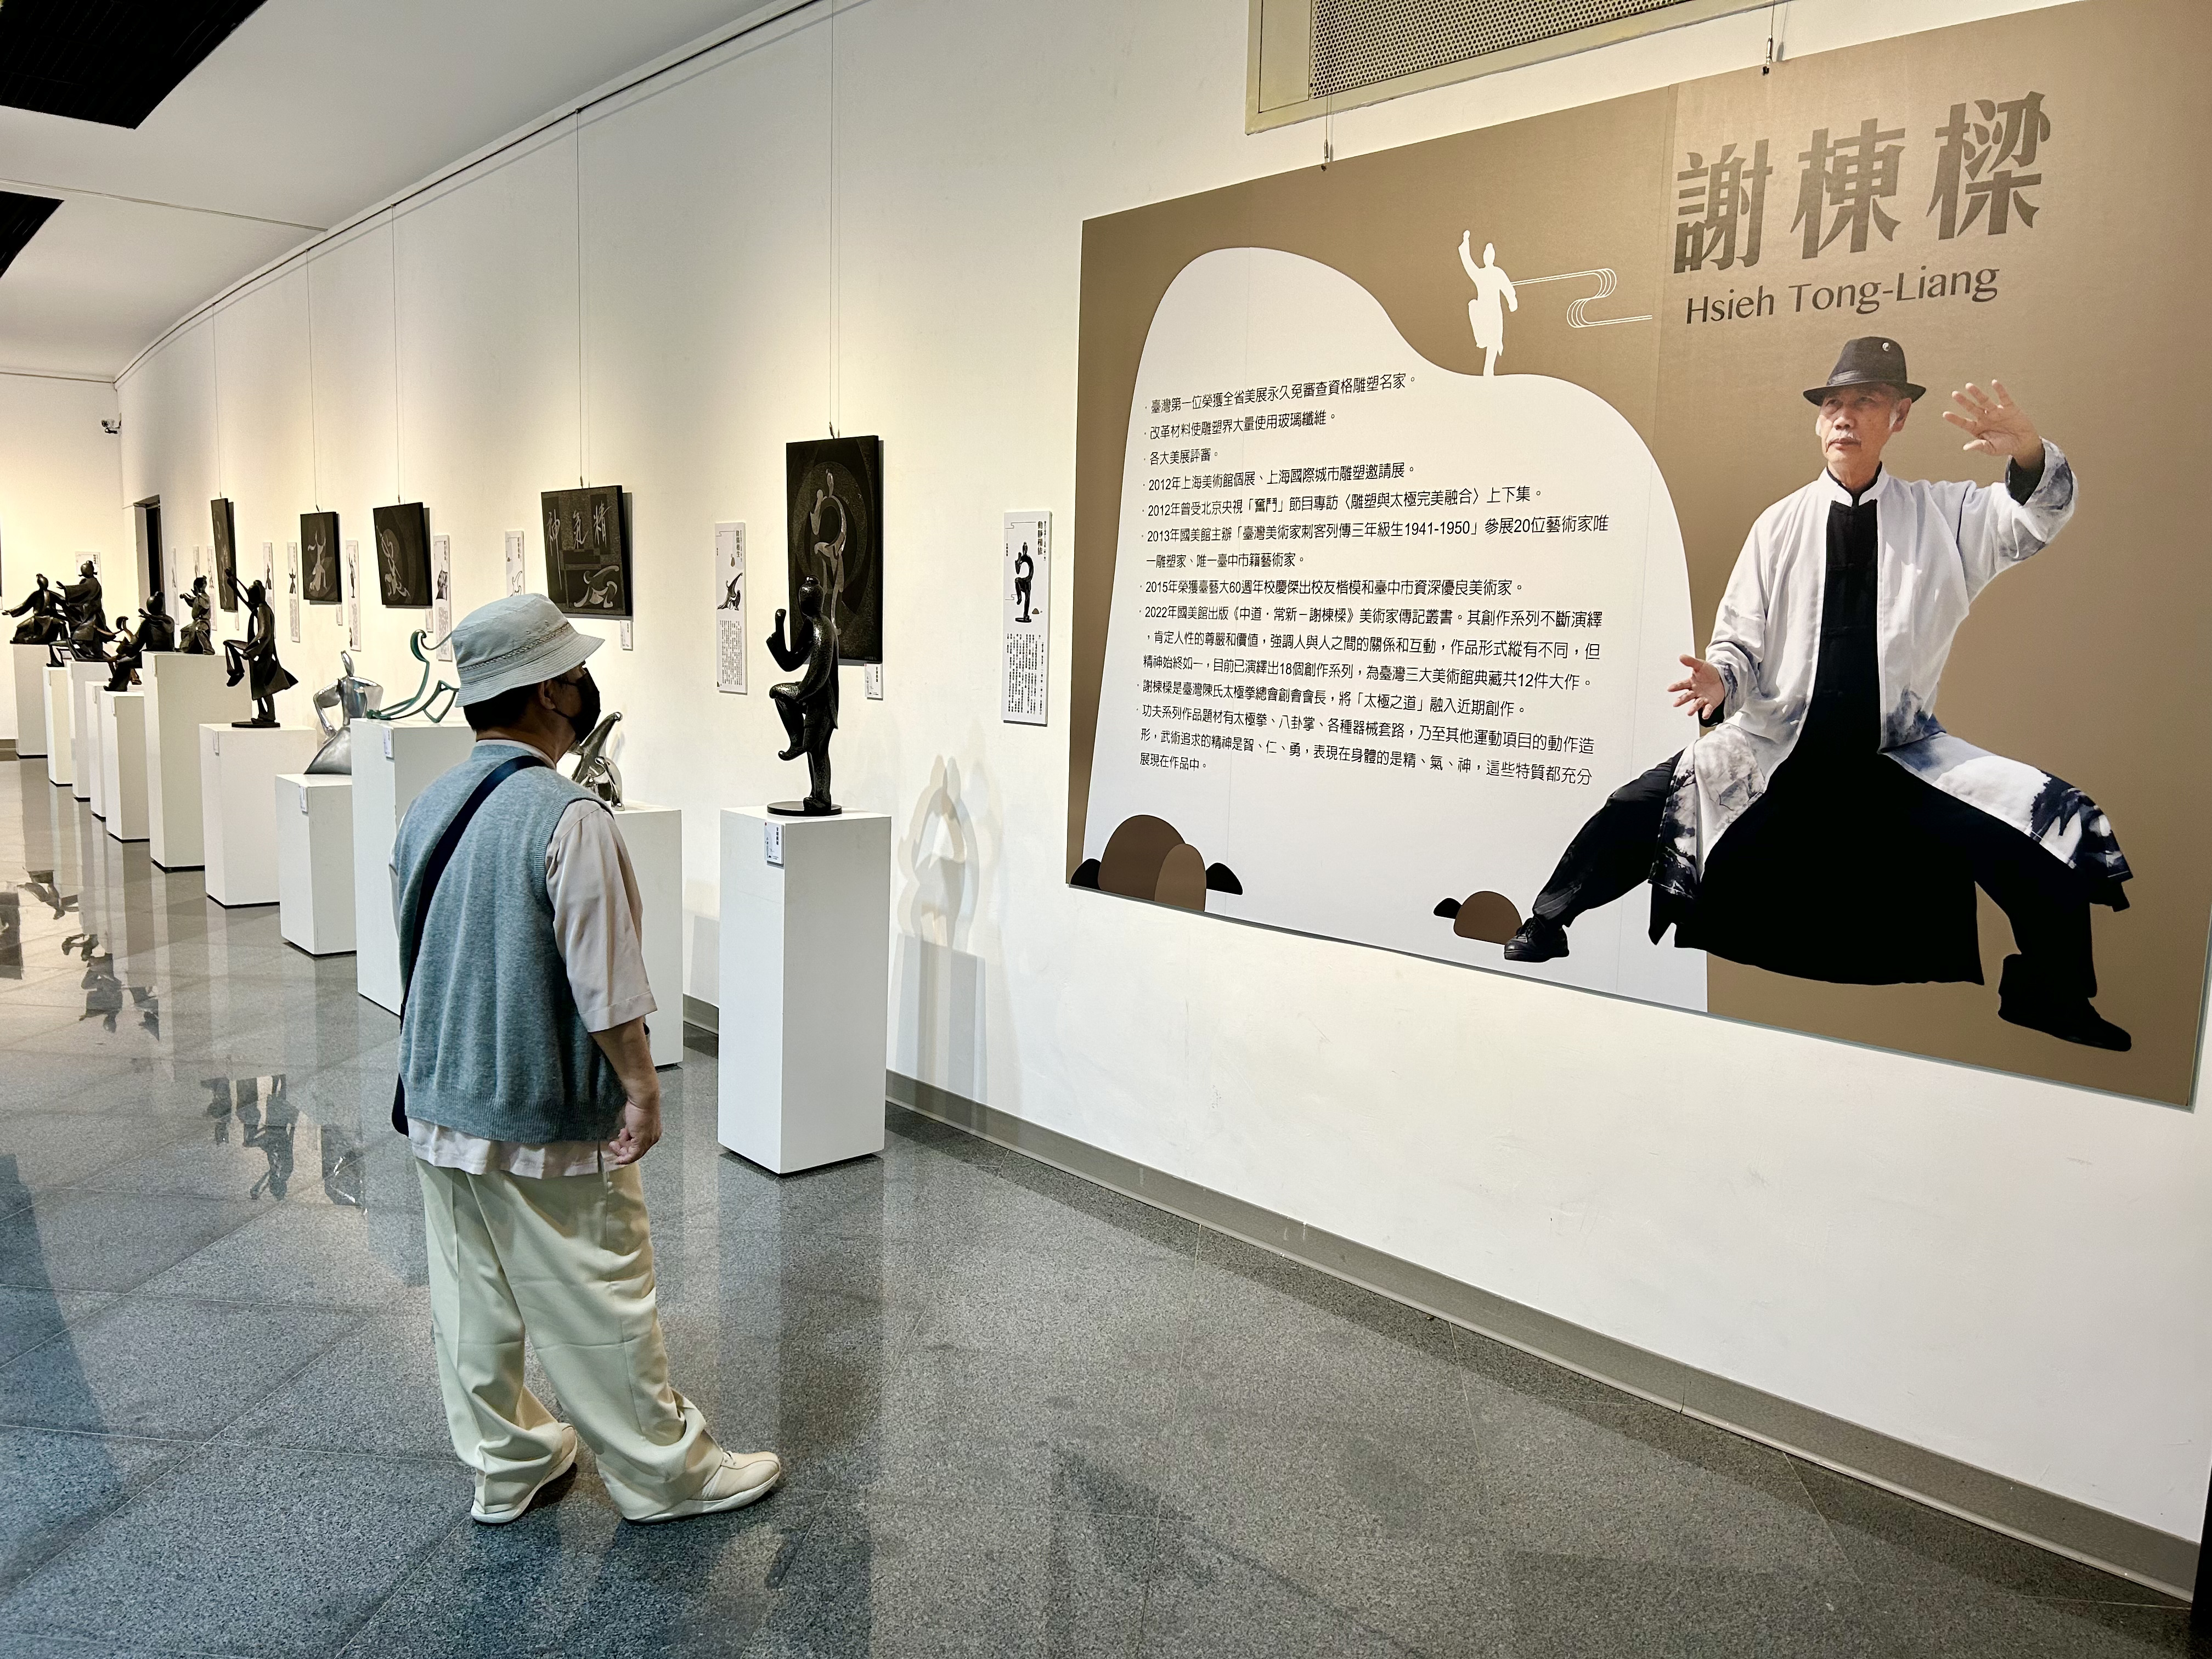 「武．禅-谢栋梁功夫系列雕塑」今(1)日在台中市屯区艺文中心登场。记者宋健生/摄影